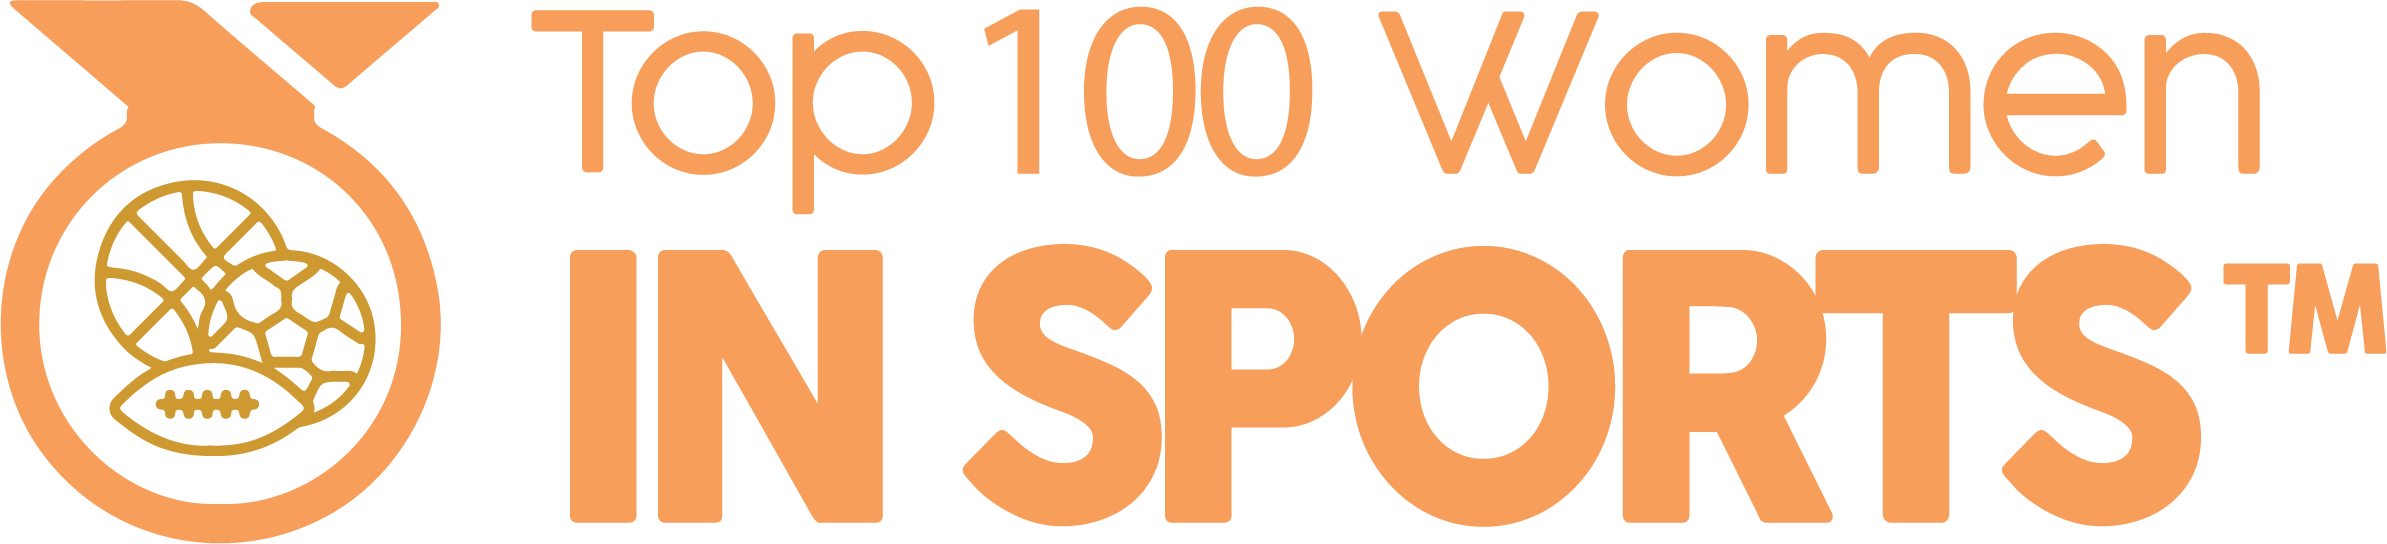 Top 100 Women in Sports